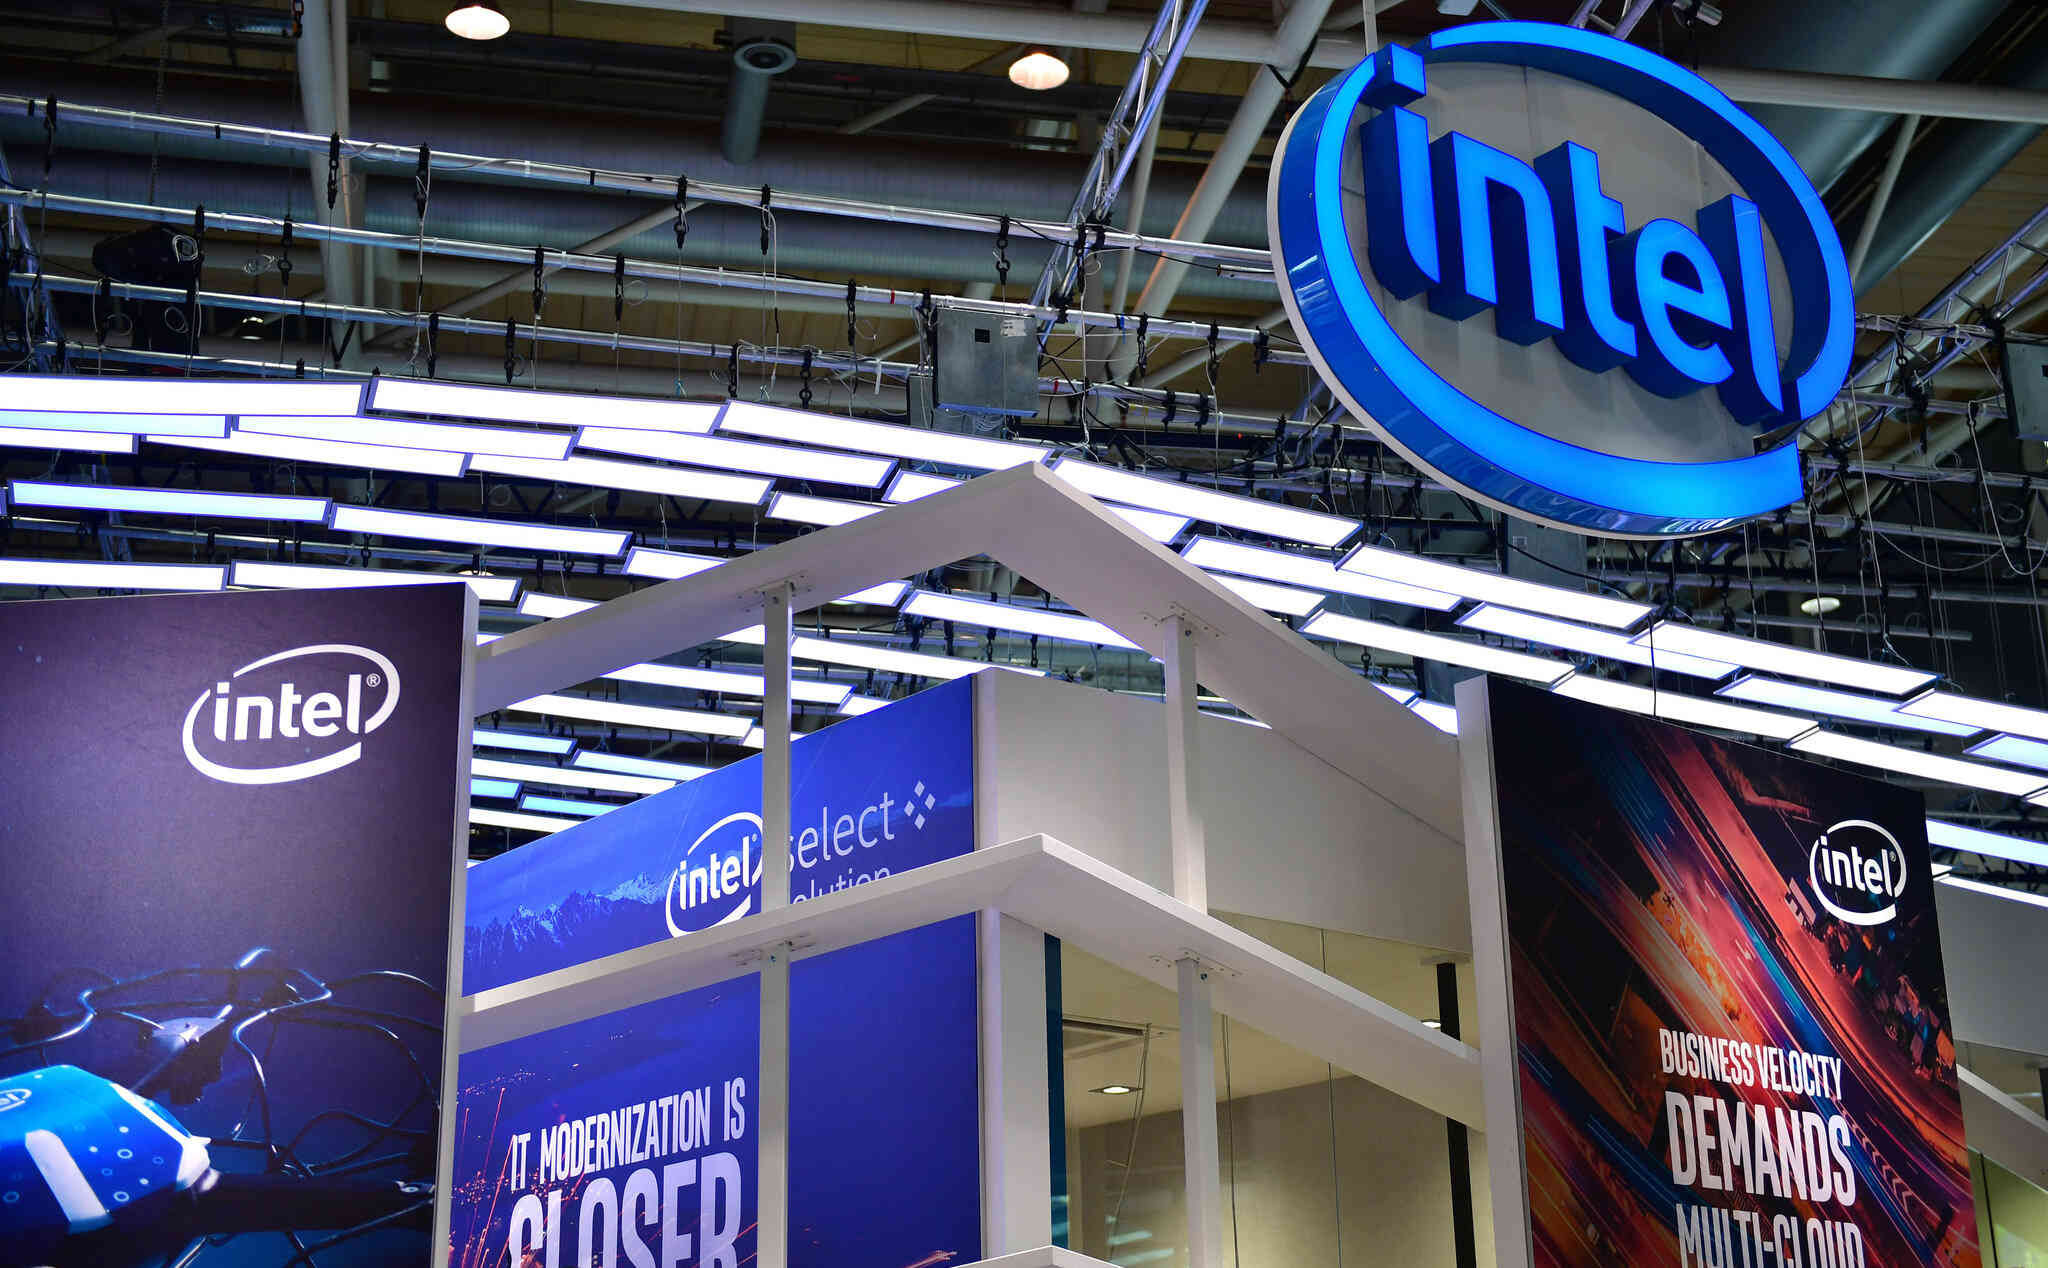 Intel kháng cáo thành công vụ kiện chống độc quyền cách đây 12 năm tại châu Âu